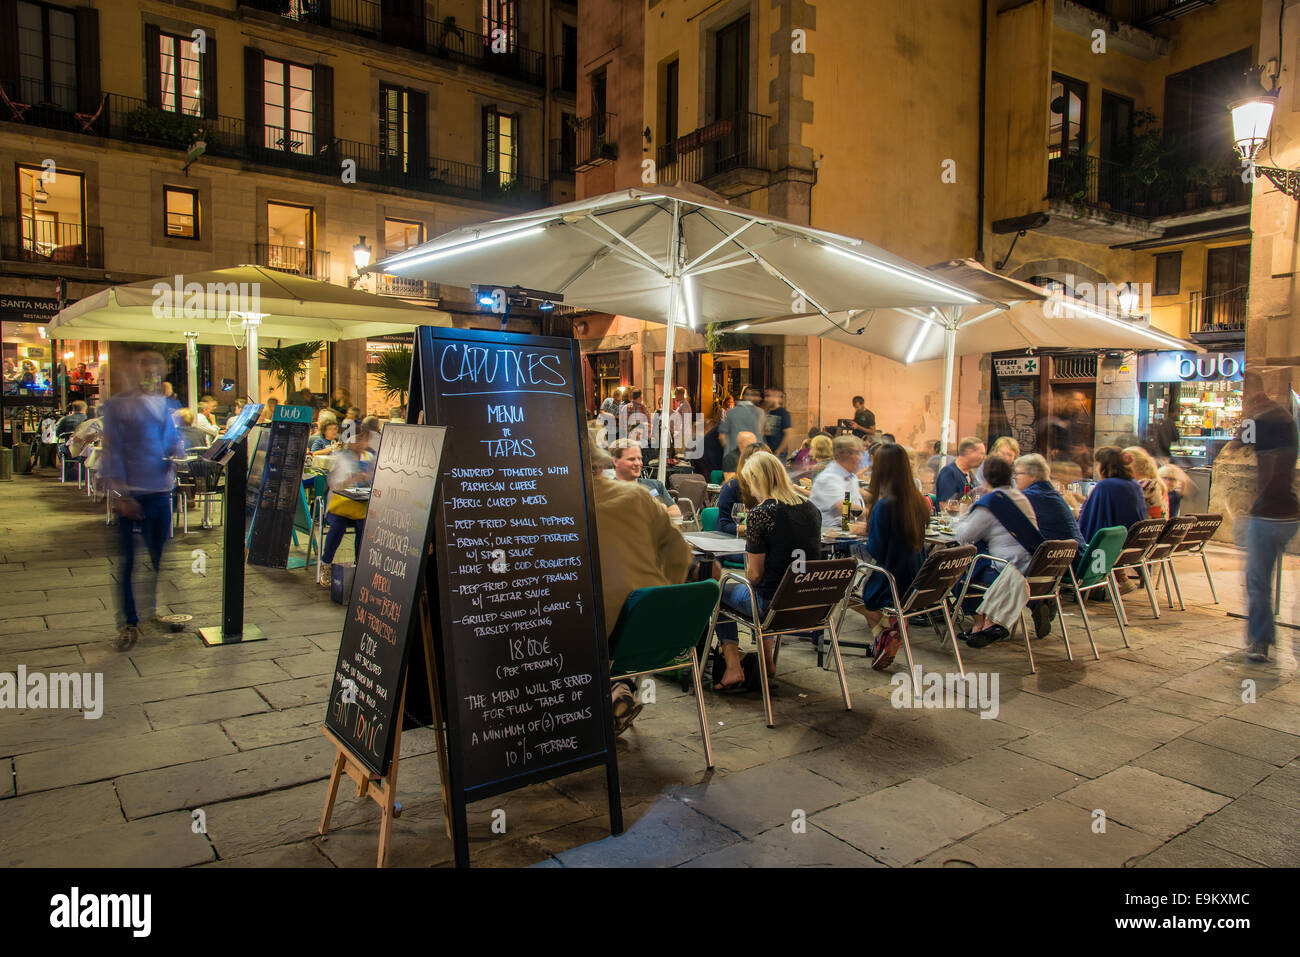 Vue de nuit sur la terrasse d'un café servant des tapas avec le menu Tableau et les gens assis à des tables, Barcelone, Catalogne, Espagne Banque D'Images